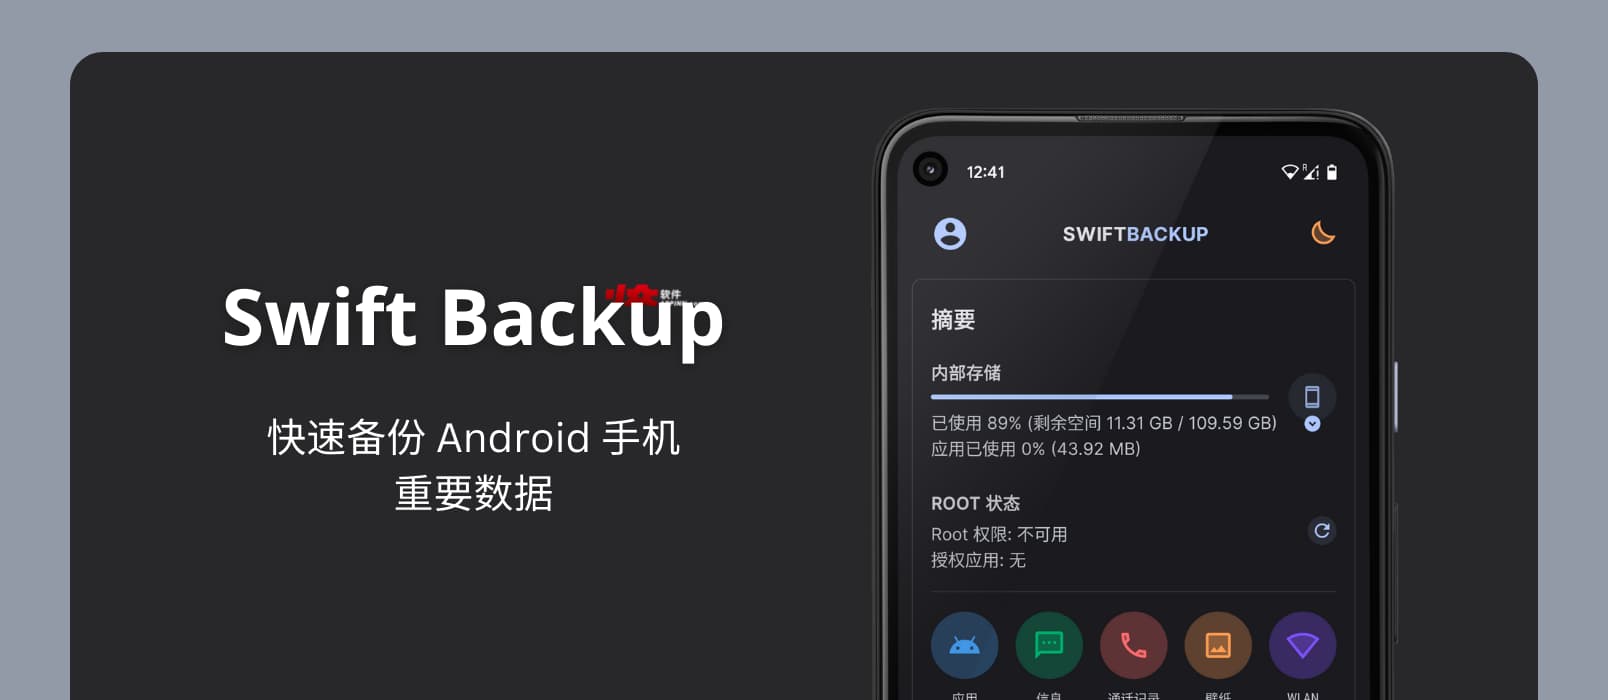 Swift Backup – 备份 Android 手机重要数据，包括短信、通信记录、壁纸、旧版应用等